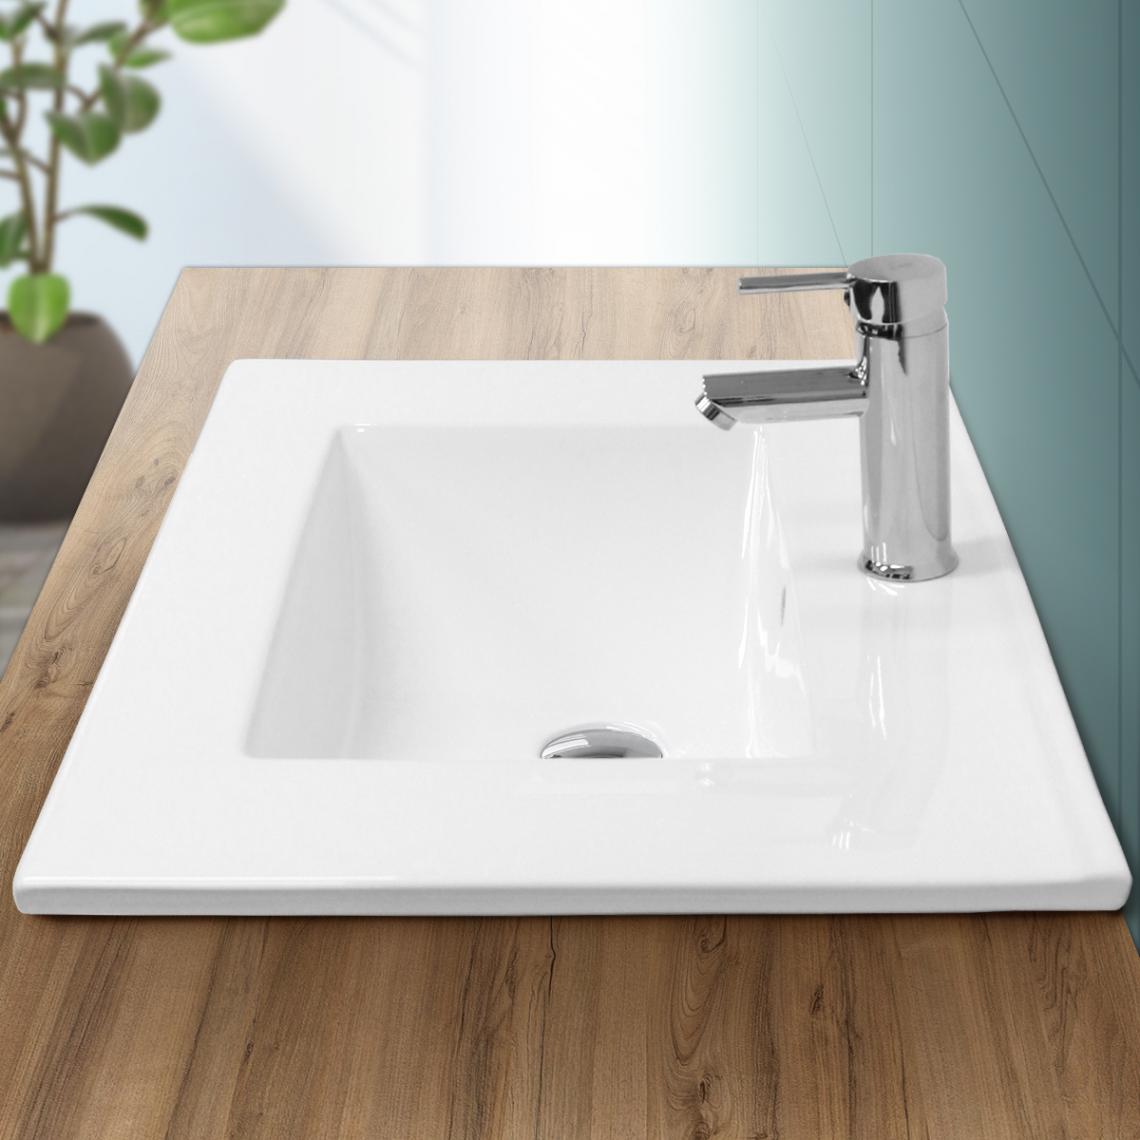 Ecd Germany - Vasque encastré lavabo évier salle de bain en céramique blanc 710 x 465 x 175 mm - Lavabo